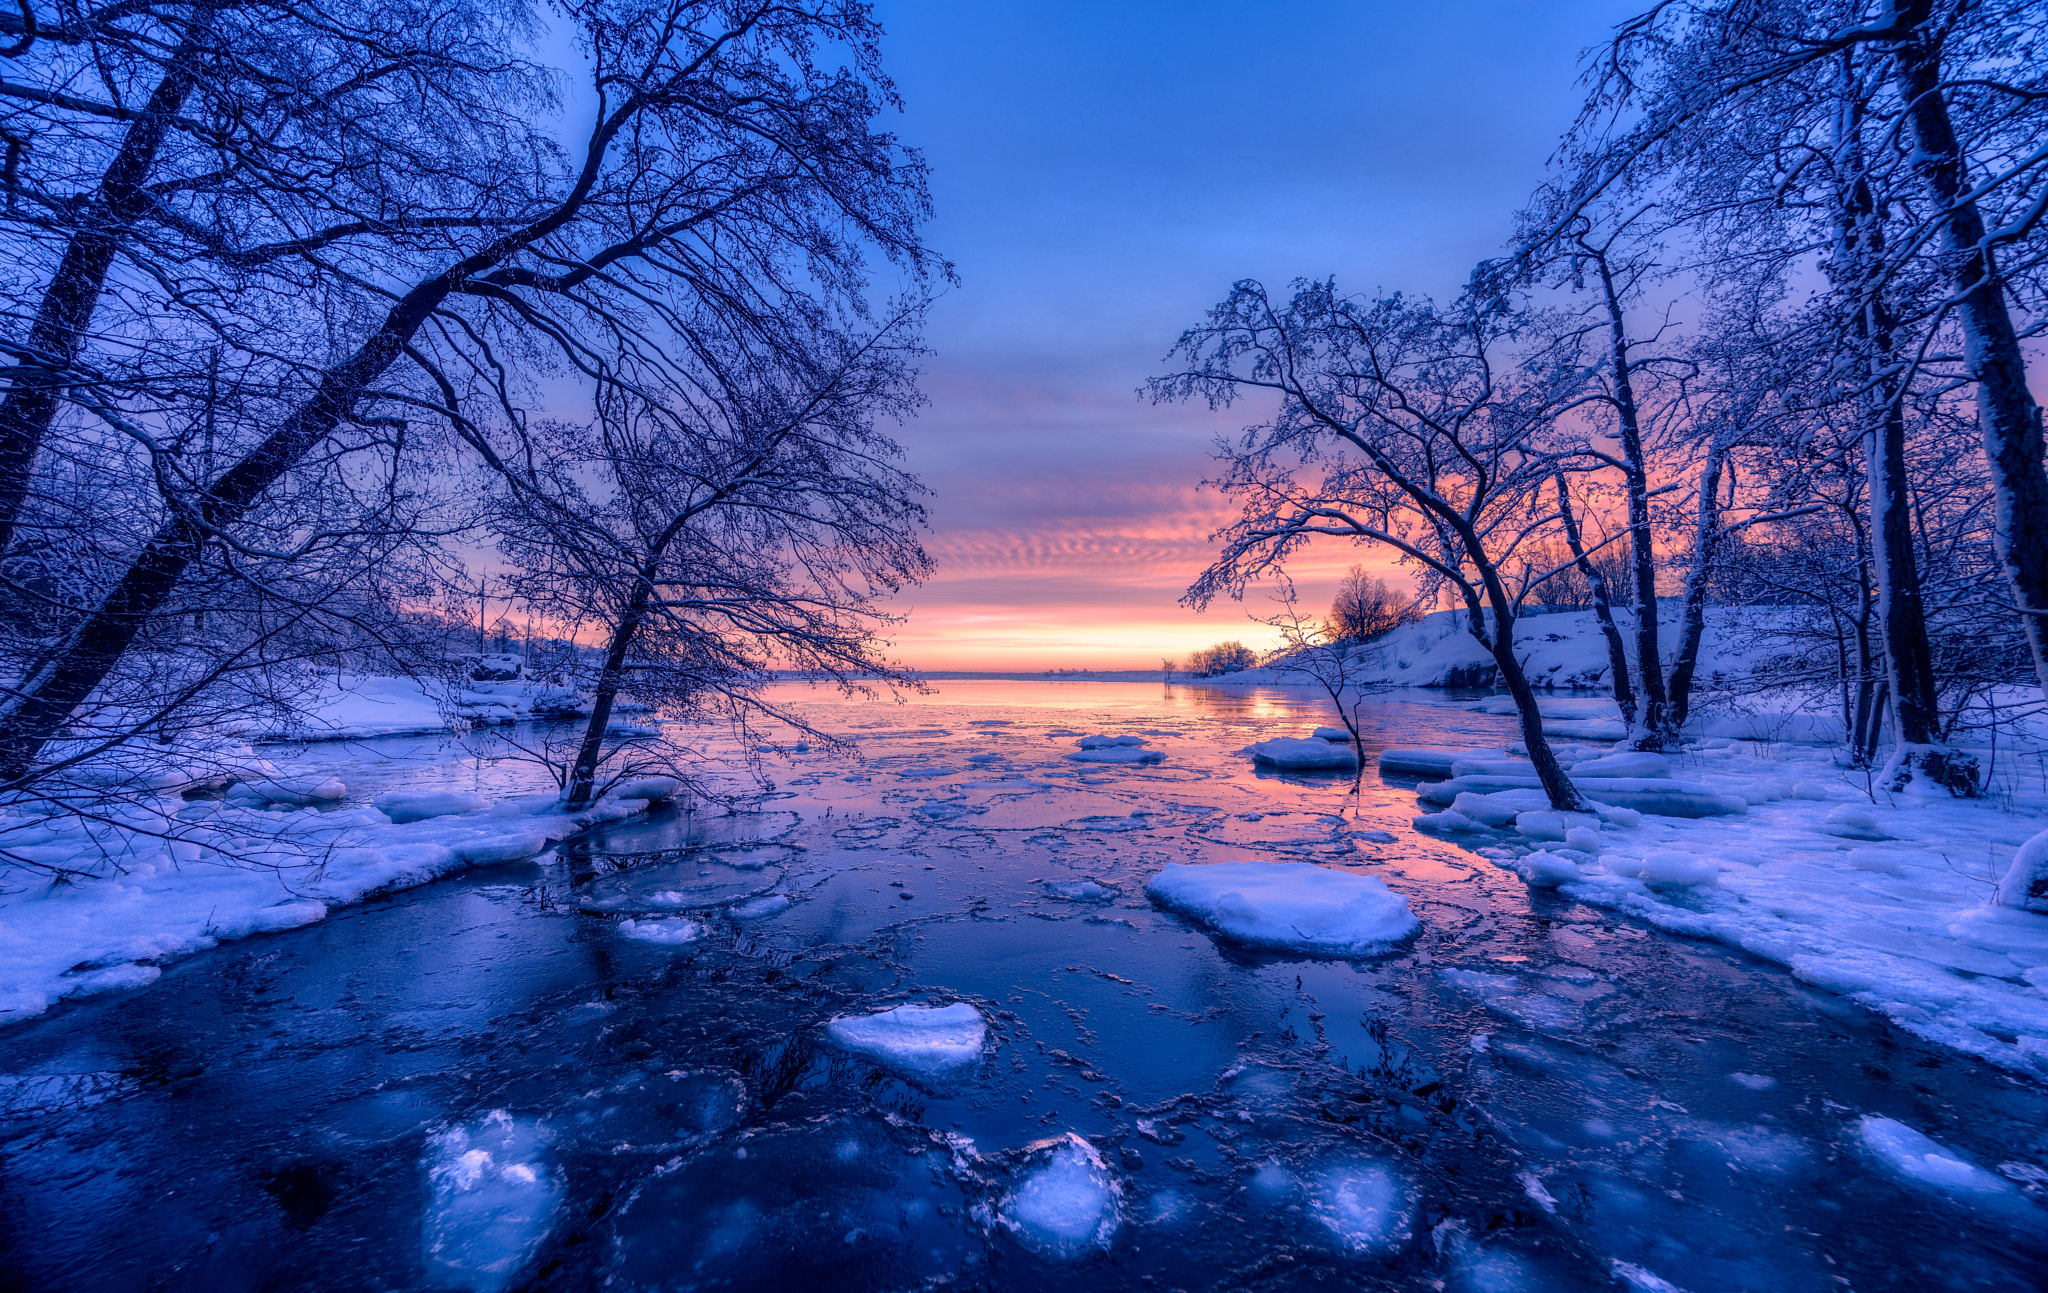 Картинка: Финляндия, зима, закат, водоём, озеро, снег, небо, рассвет, деревья, природа, пейзаж